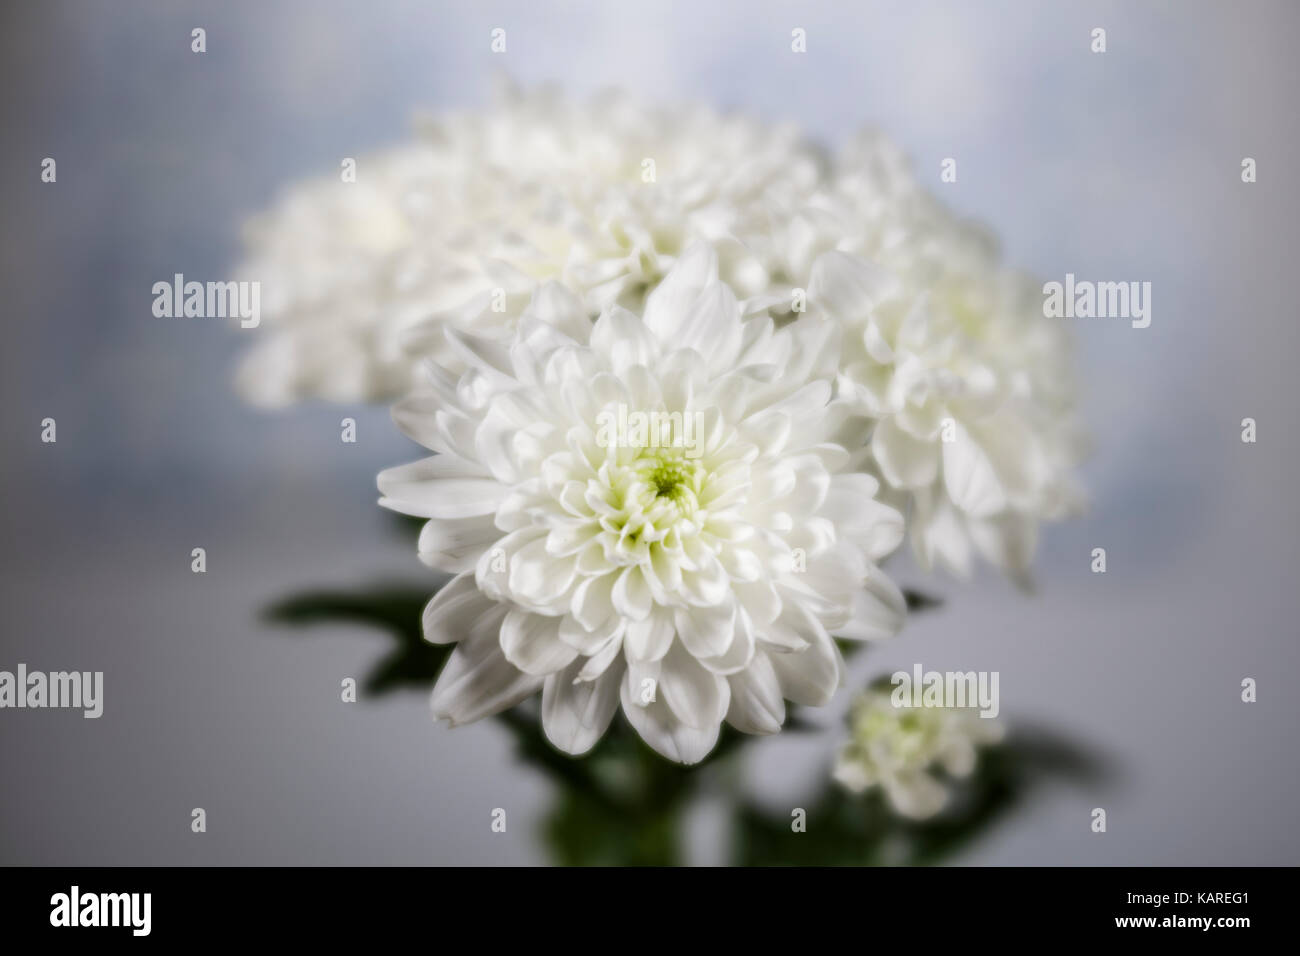 Alors que trois fleurs de chrysanthème contre un arrière-plan gris Banque D'Images